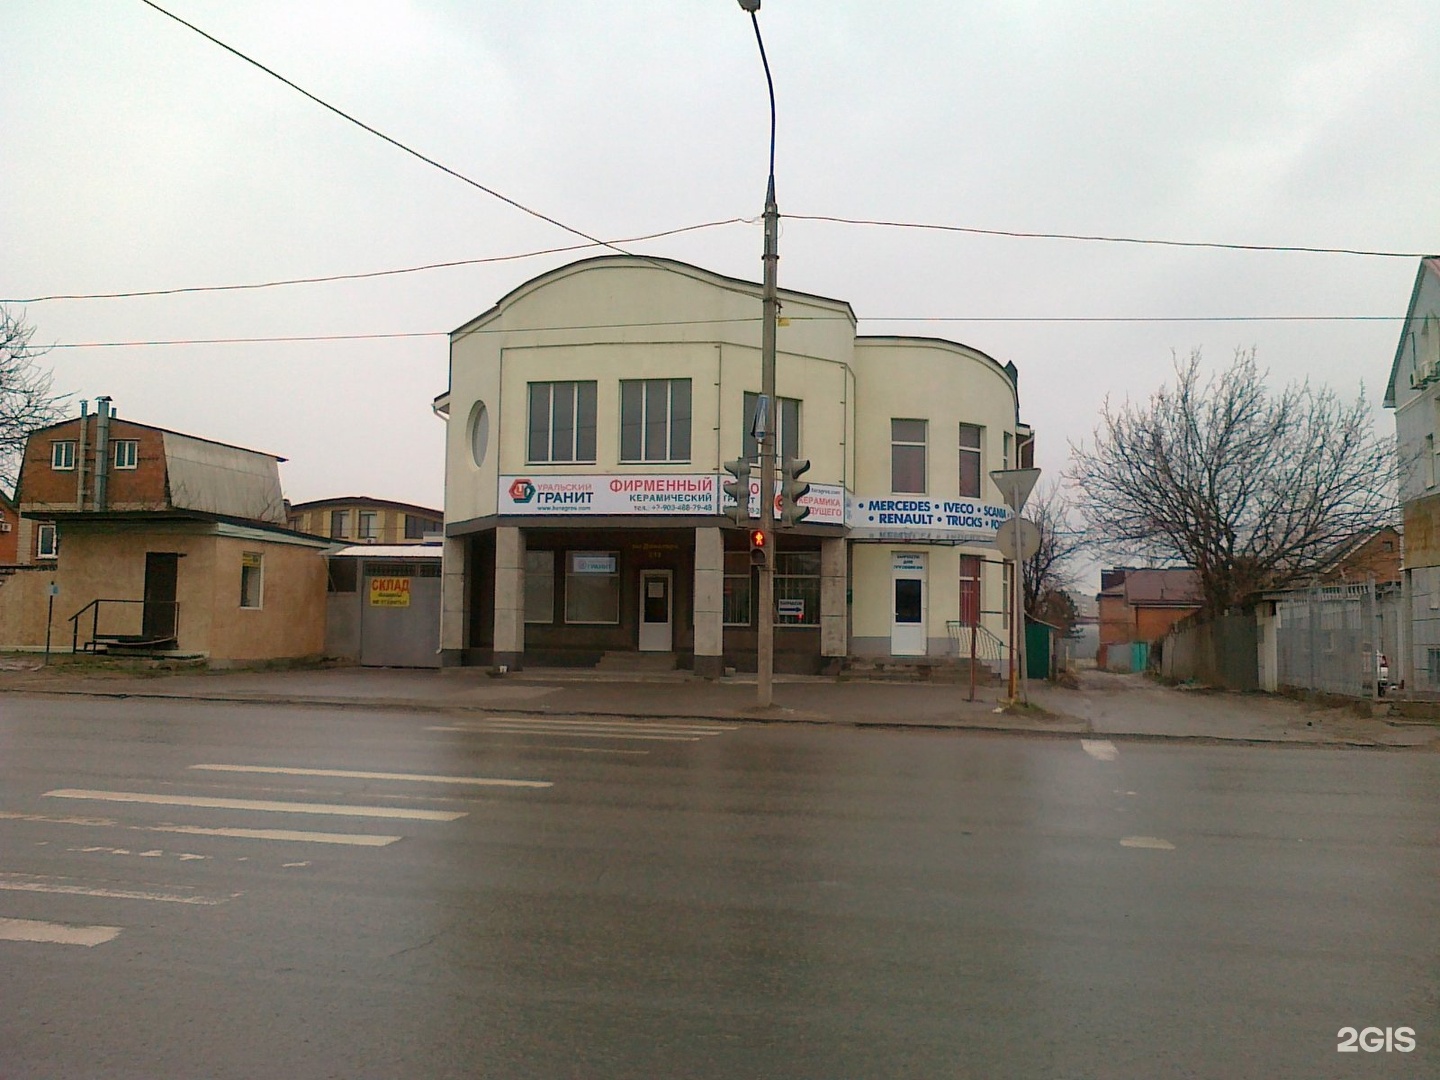 Доватора 213 в Ростове на Дону.